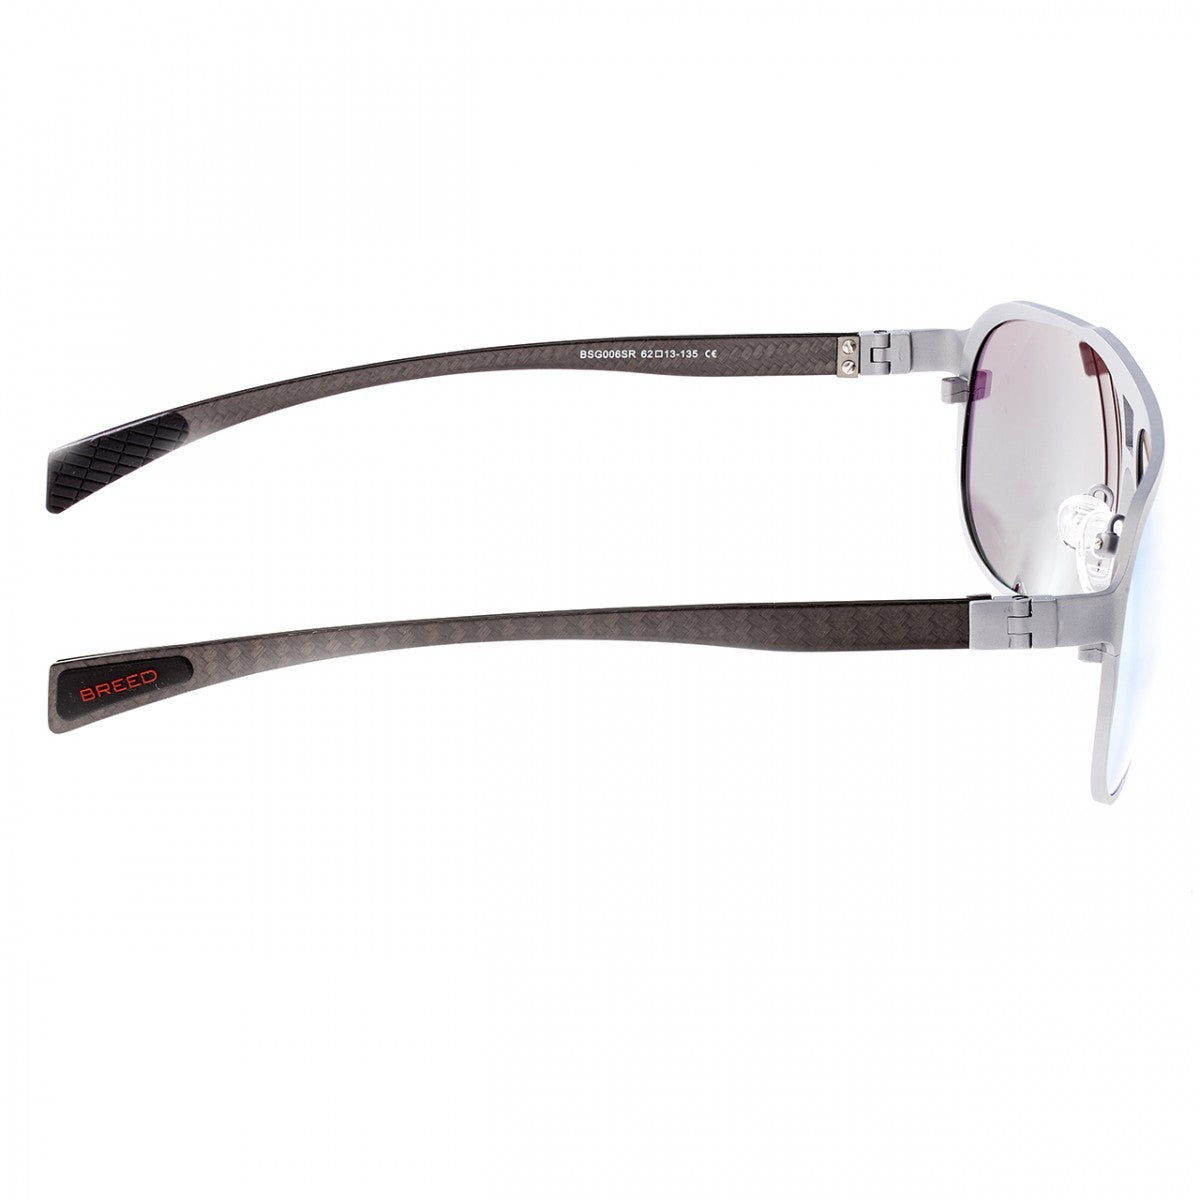 Breed Apollo Titanium and Carbon Fiber Polarized Sunglasses - Silver/Gold - BSG006SR